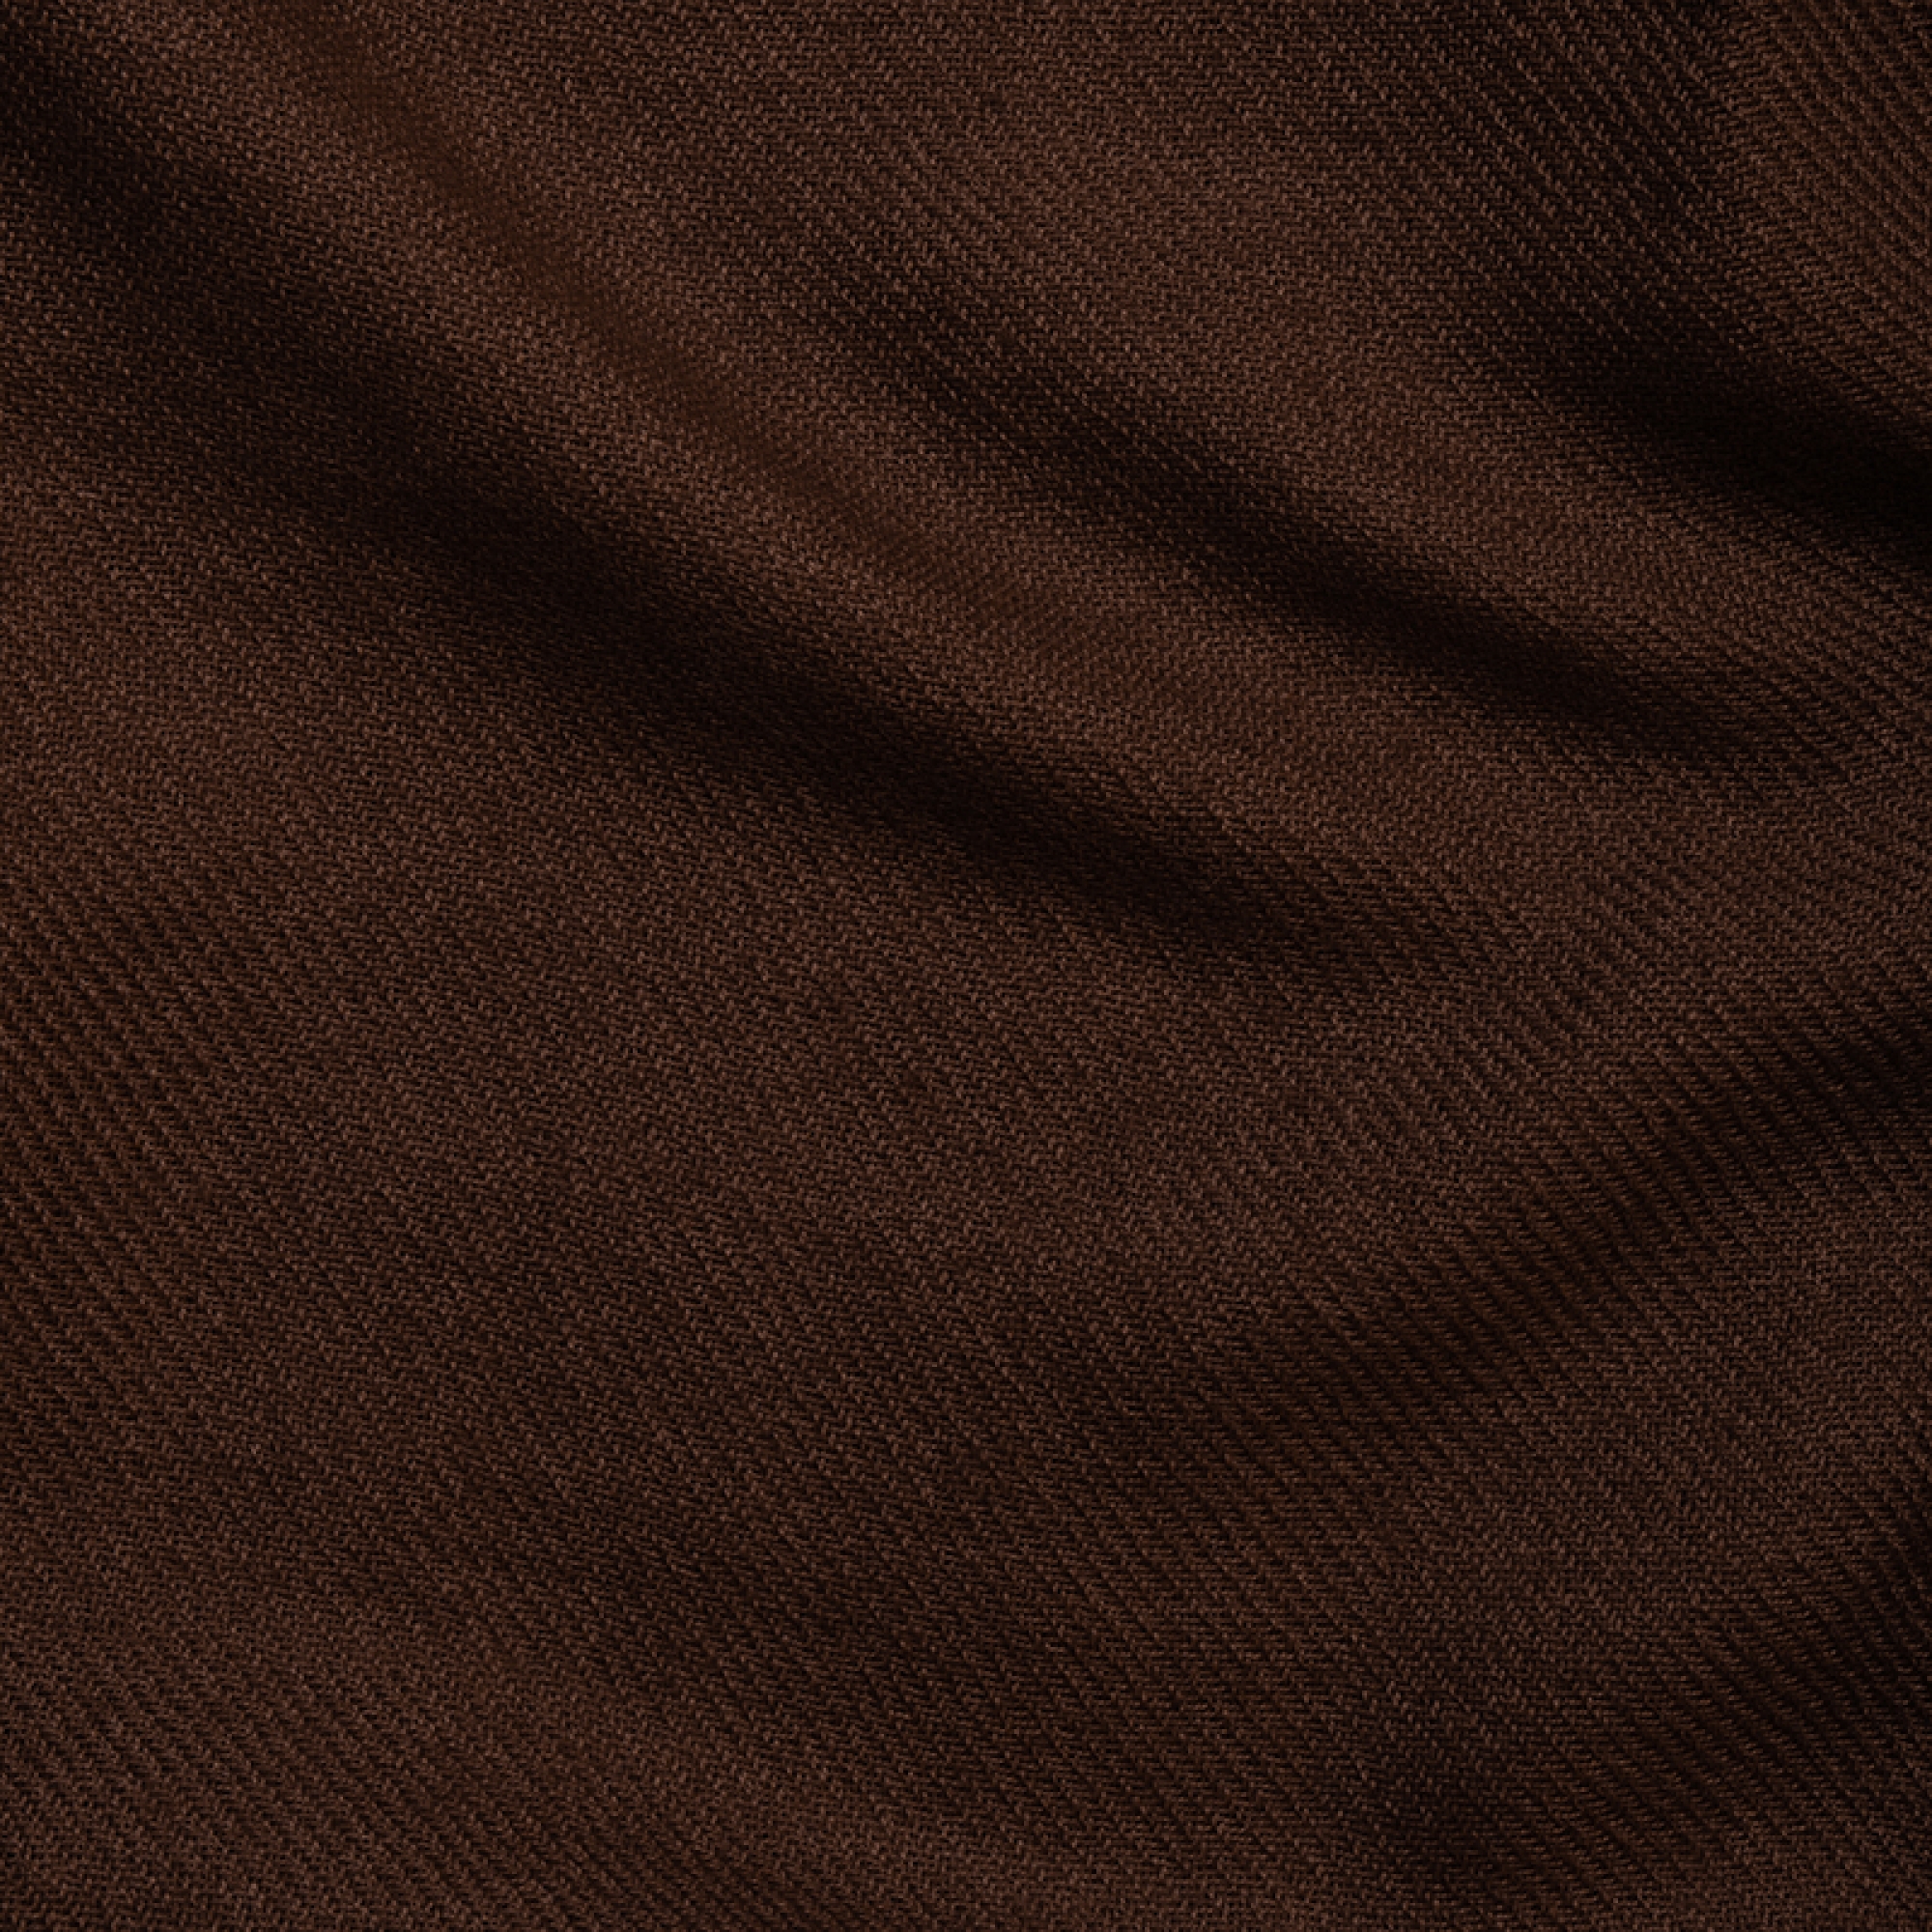 Cachemire accessoires couvertures plaids toodoo plain s 140 x 200 cacao 140 x 200 cm